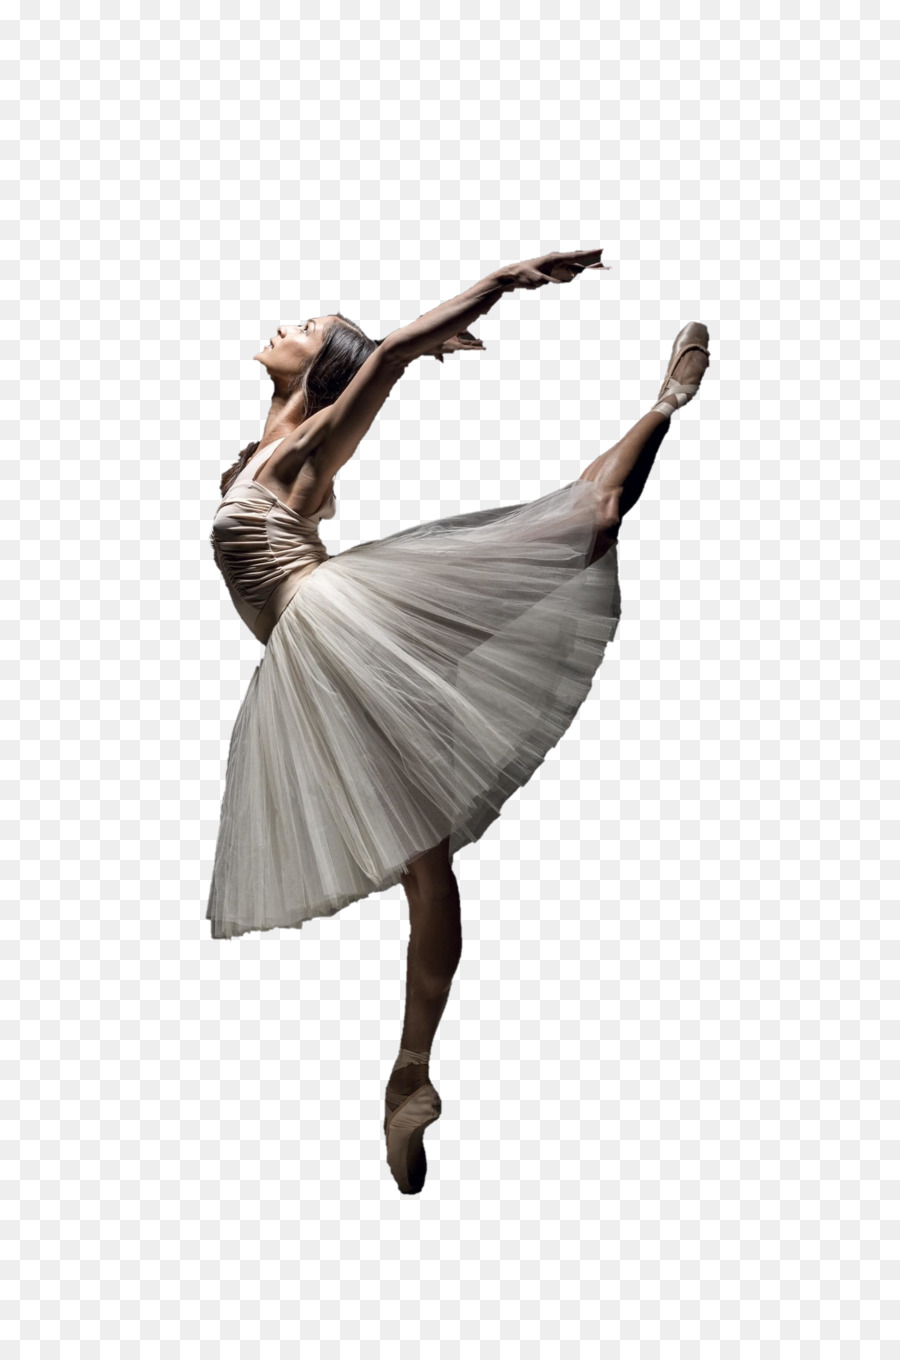 Bailarina De Ballet, Bailarina, Ballet imagen png - imagen transparente  descarga gratuita